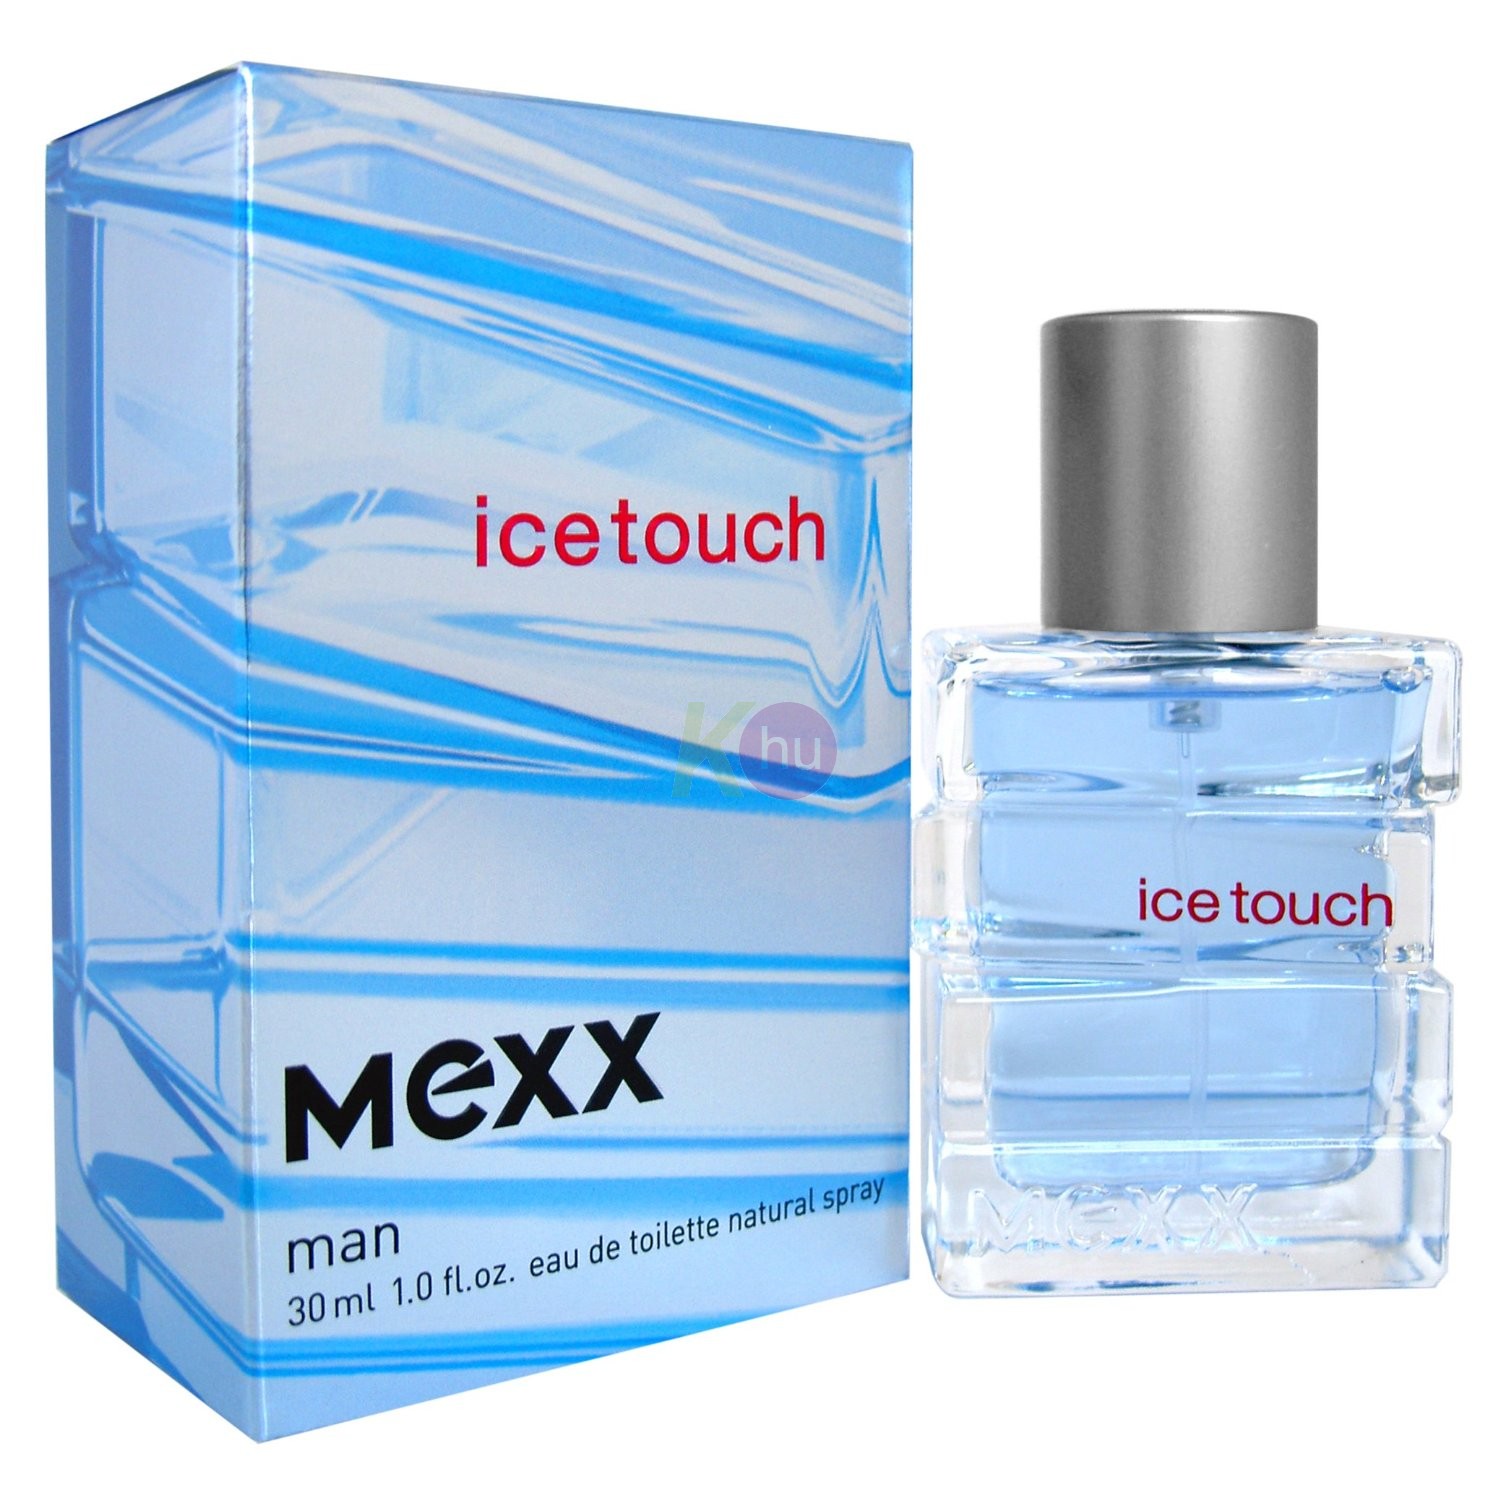 Mexx Ice Touch man edt 30ml 18102900